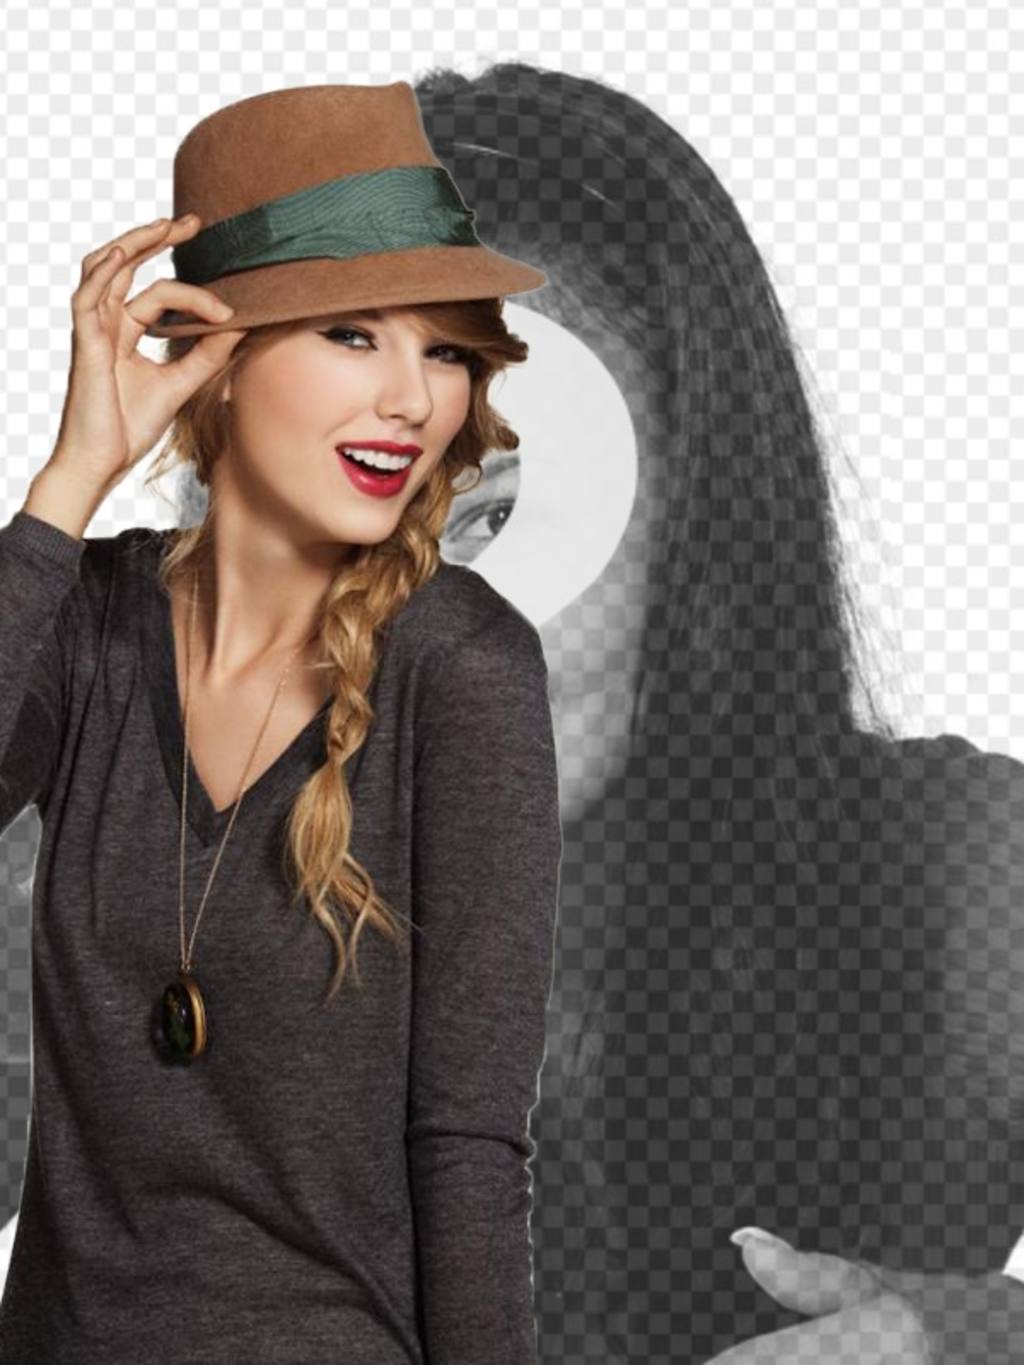 Fotomontaggio con Taylor Swift in cui vi apparirà con la cantante indossa un cappello rosso e..